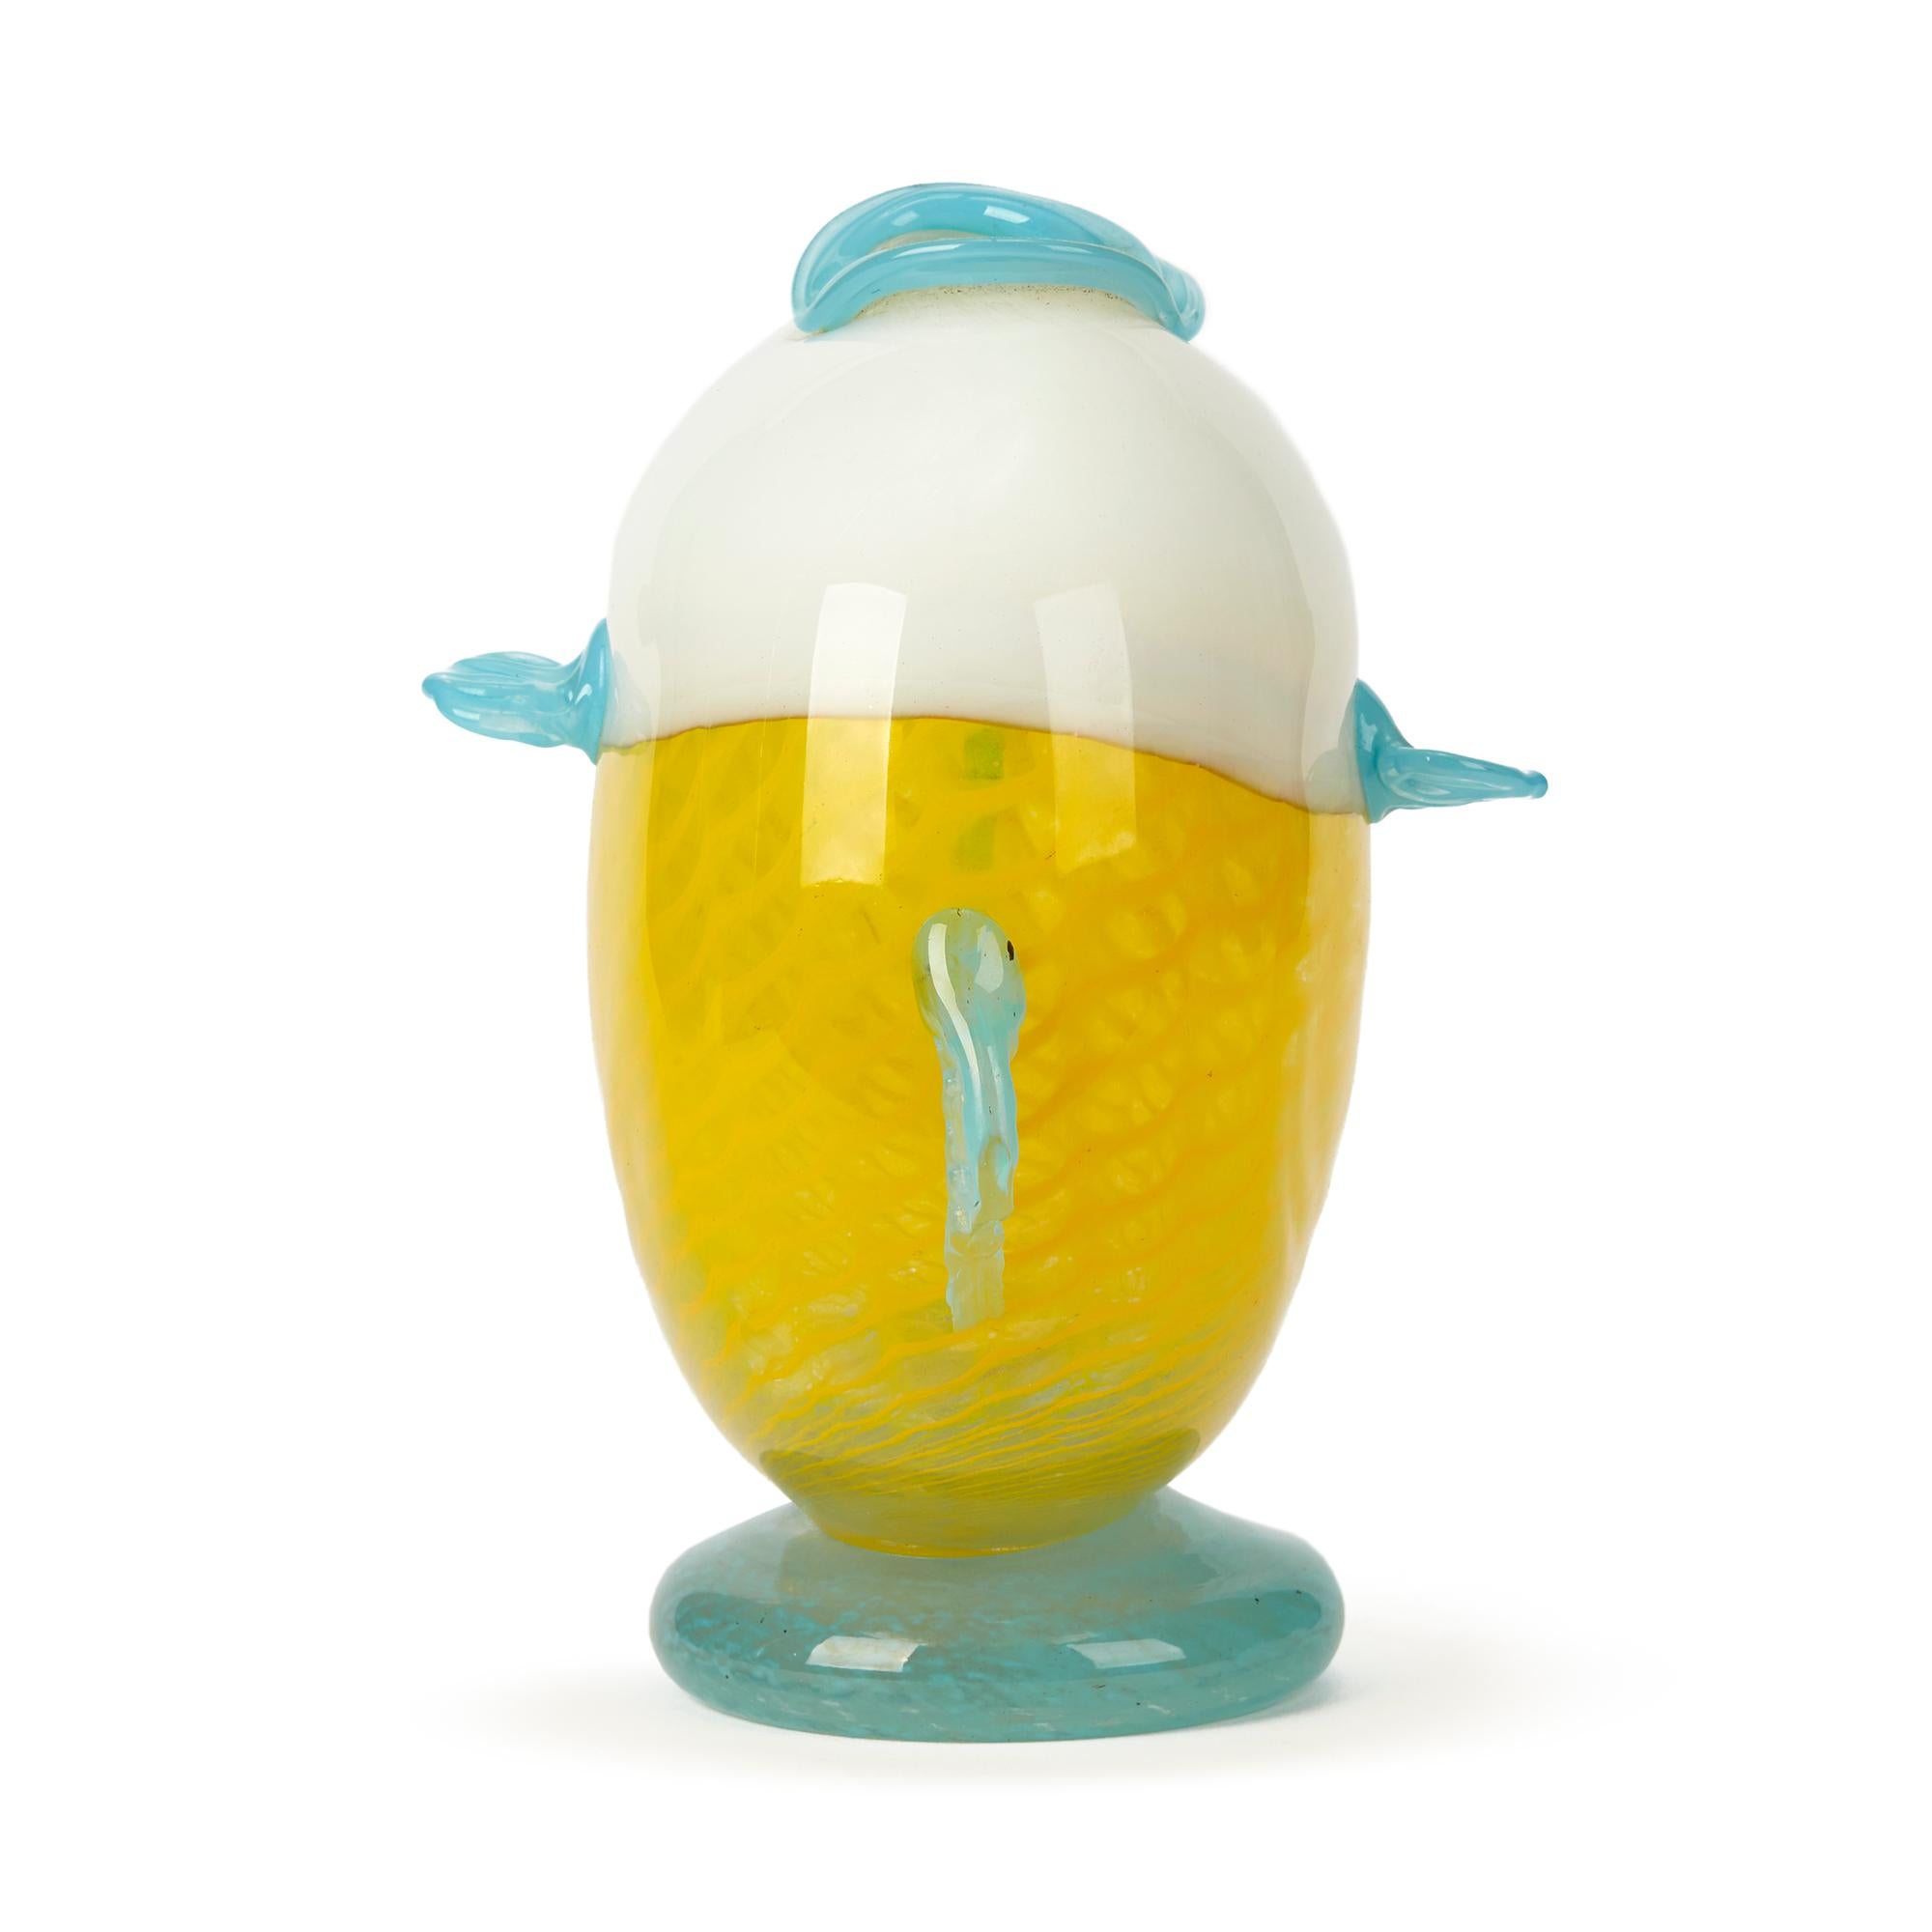 Un vase inhabituel en verre d'art attribué à Murano, modelé comme un poisson-globe. Le vase a un corps plat et arrondi en verre à motif d'écailles blanc et jaune avec des yeux appliqués et des nageoires et lèvres en verre bleu qui forment le haut du